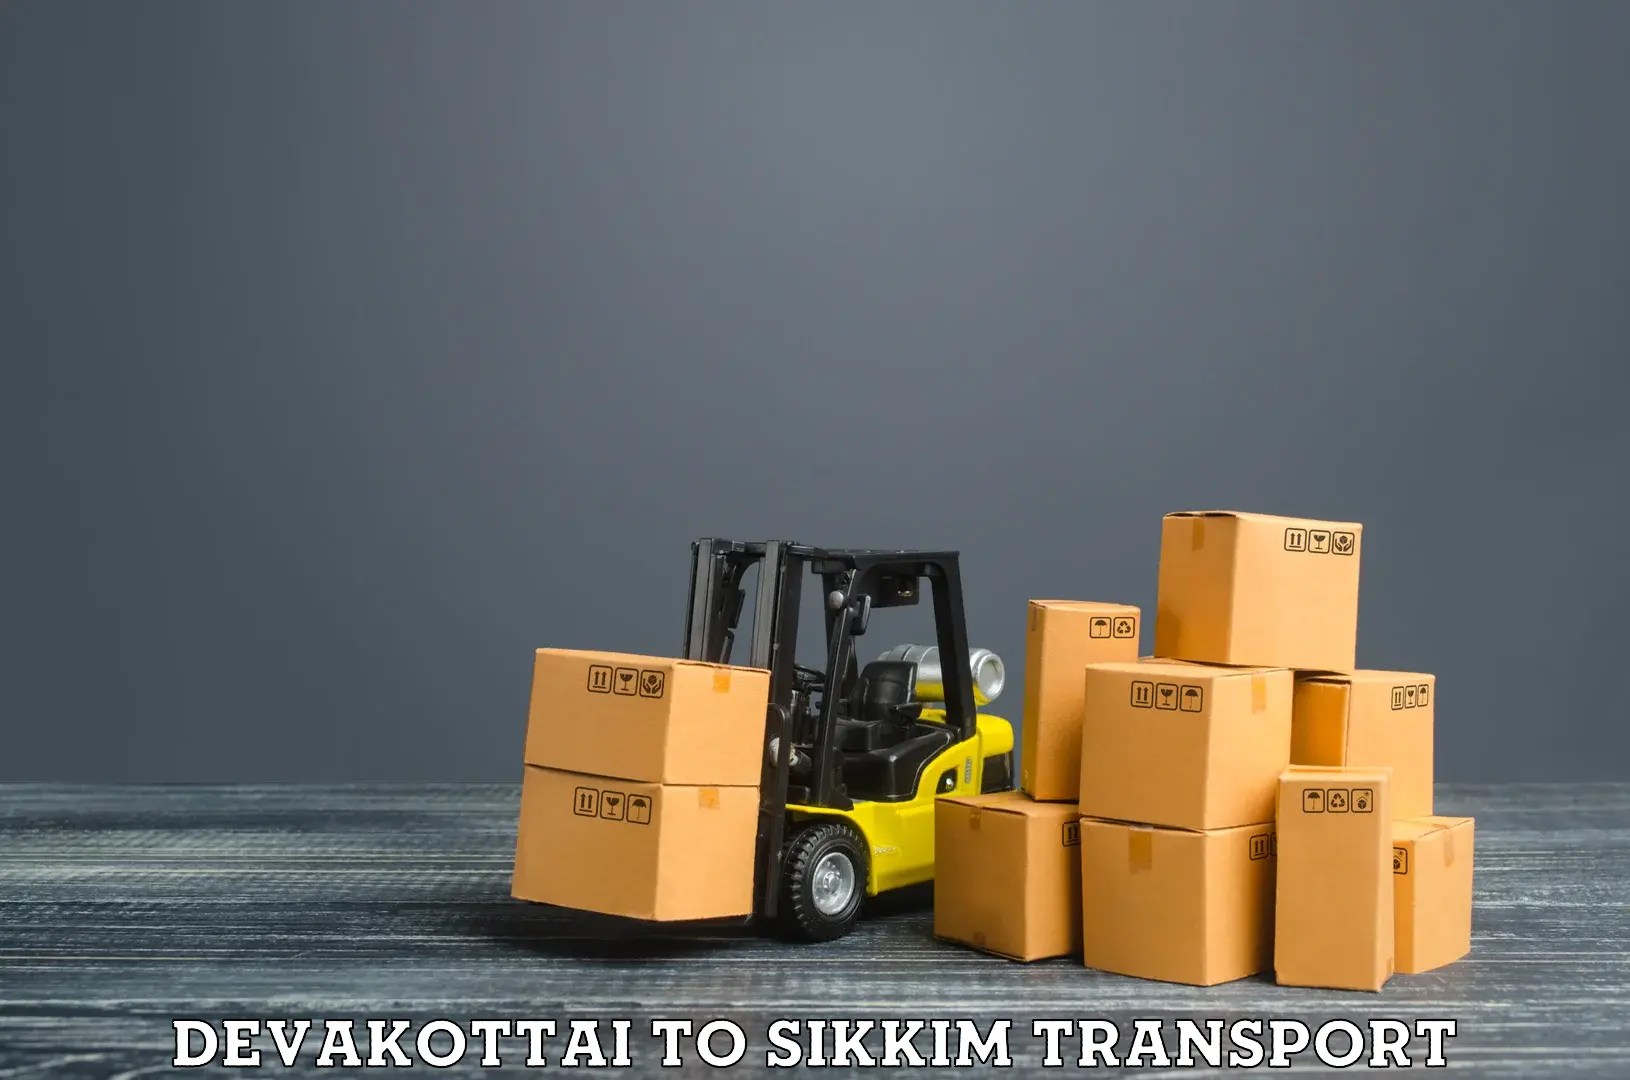 Two wheeler parcel service Devakottai to West Sikkim